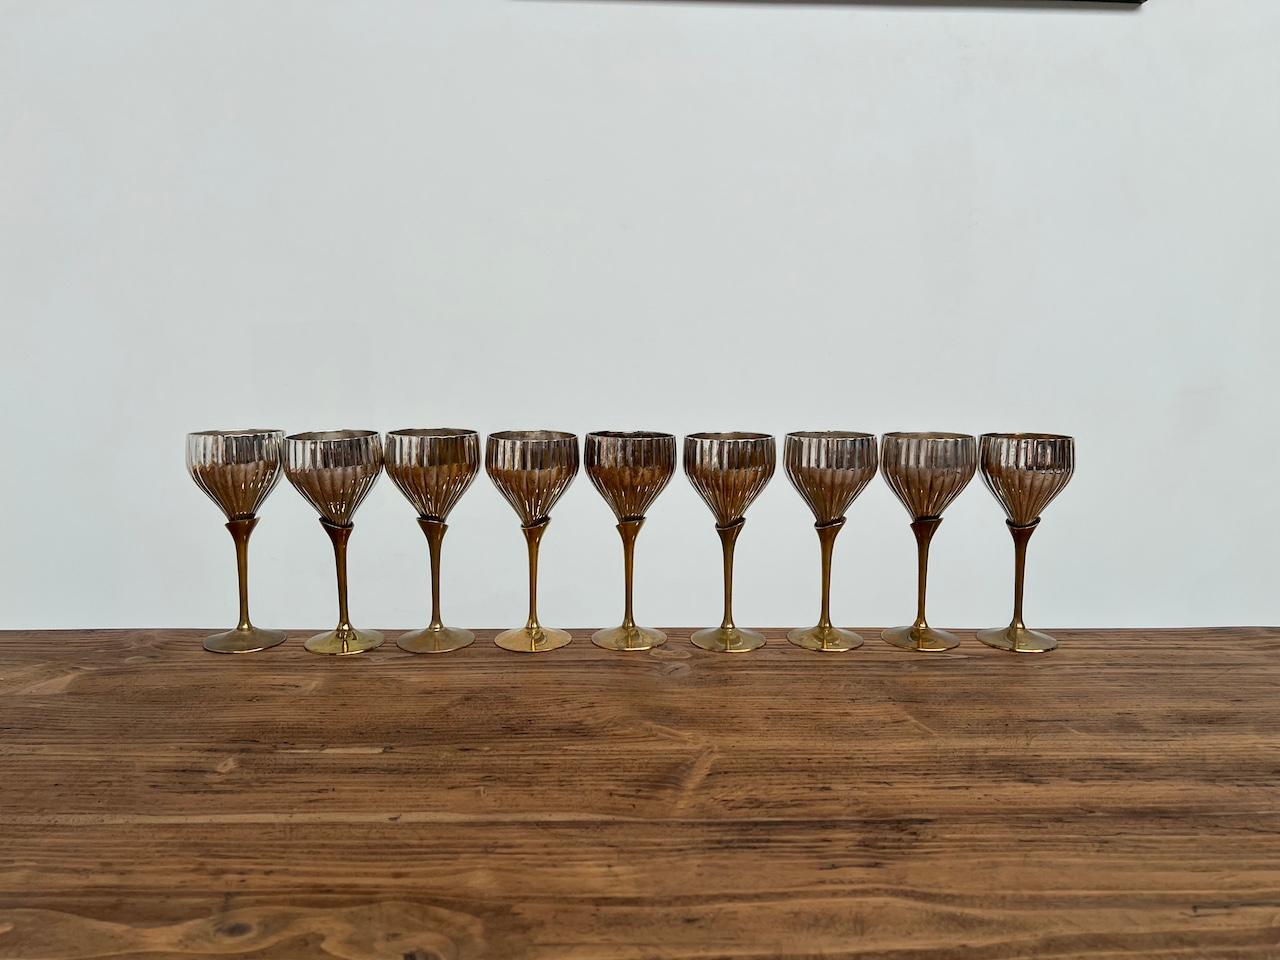 Serie von 9 Gläsern aus den 1950er Jahren in Silbermetall und Messing

Diese Gläser aus den 50er Jahren haben eine sehr schöne Originalpatina und können als Dekoration oder zum Trinken verwendet werden!

Äußerst dekorativ auf einem Tisch. Ein